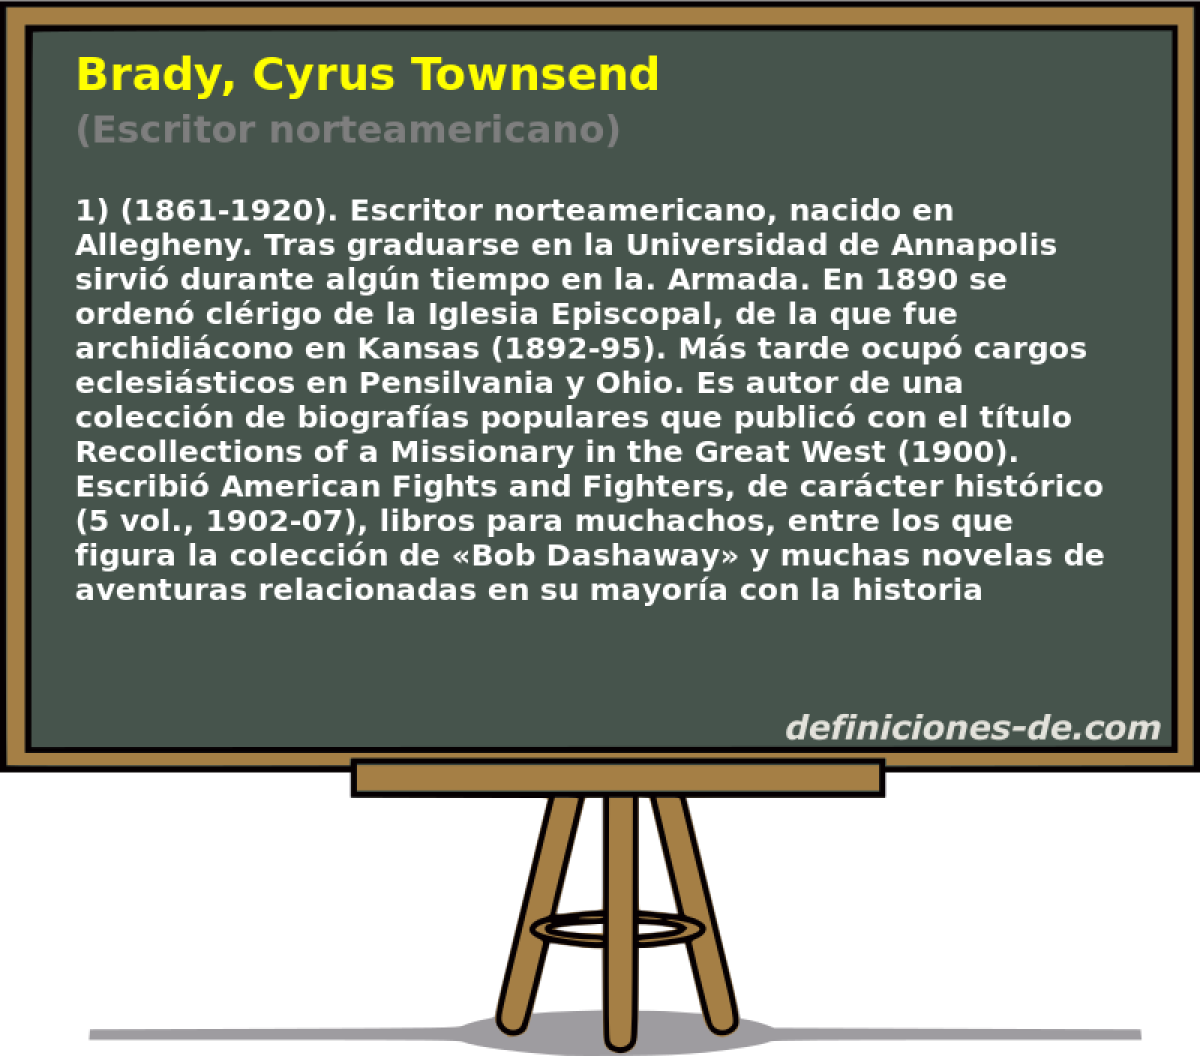 Brady, Cyrus Townsend (Escritor norteamericano)